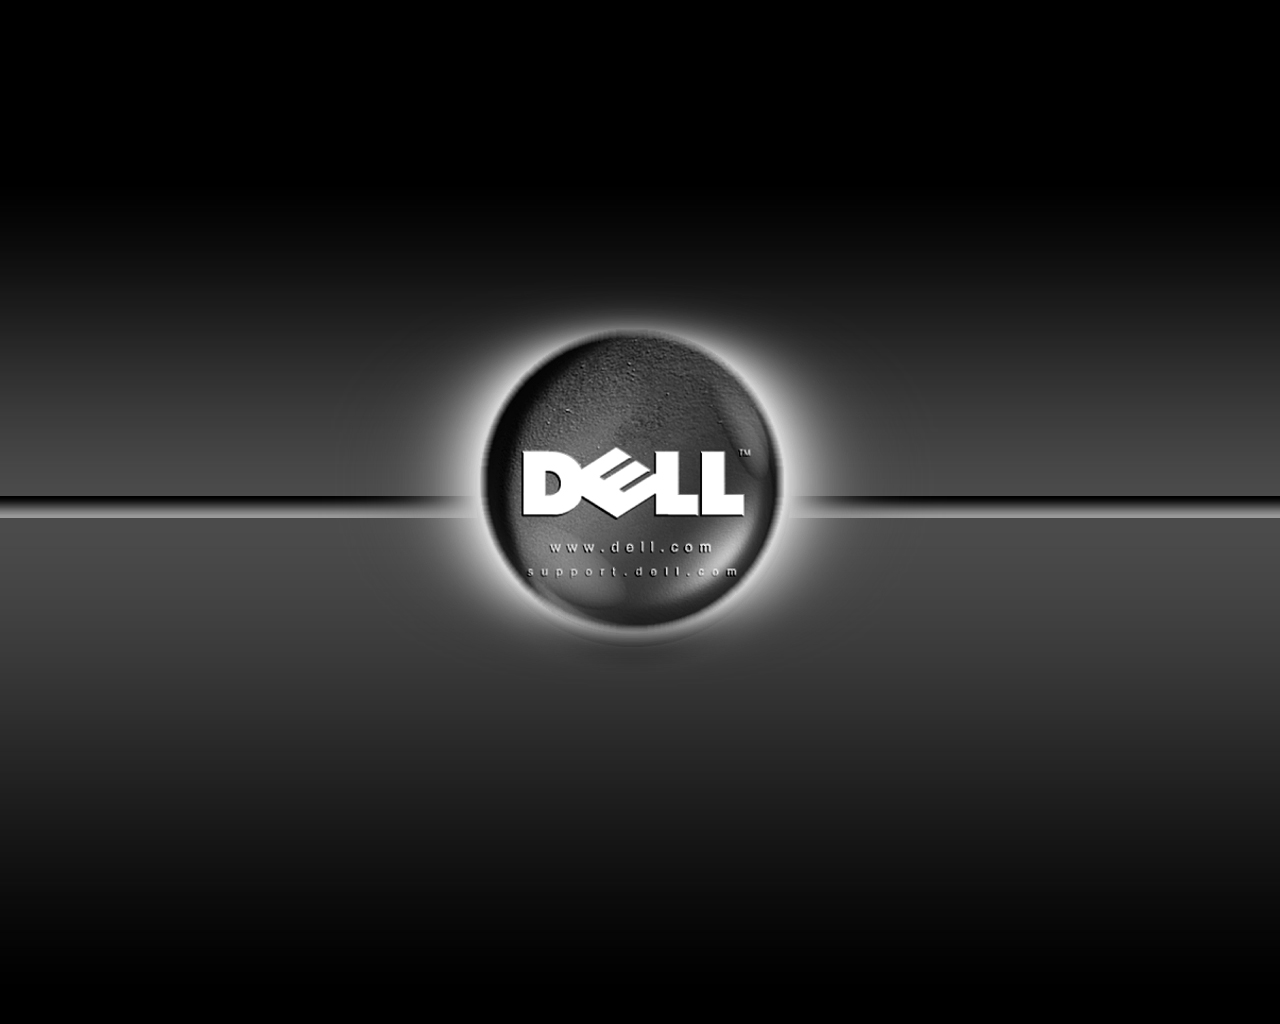 Sở hữu chiếc laptop Dell đẳng cấp và cá tính không thể thiếu một bộ sưu tập Hình nền độc đáo và ấn tượng. Đến với bộ sưu tập Hình nền laptop Dell, bạn sẽ được trải nghiệm những hình ảnh đa dạng, từ những hình ảnh đẹp mắt, phong cảnh đến những hình ảnh hoạt hình vui nhộn.